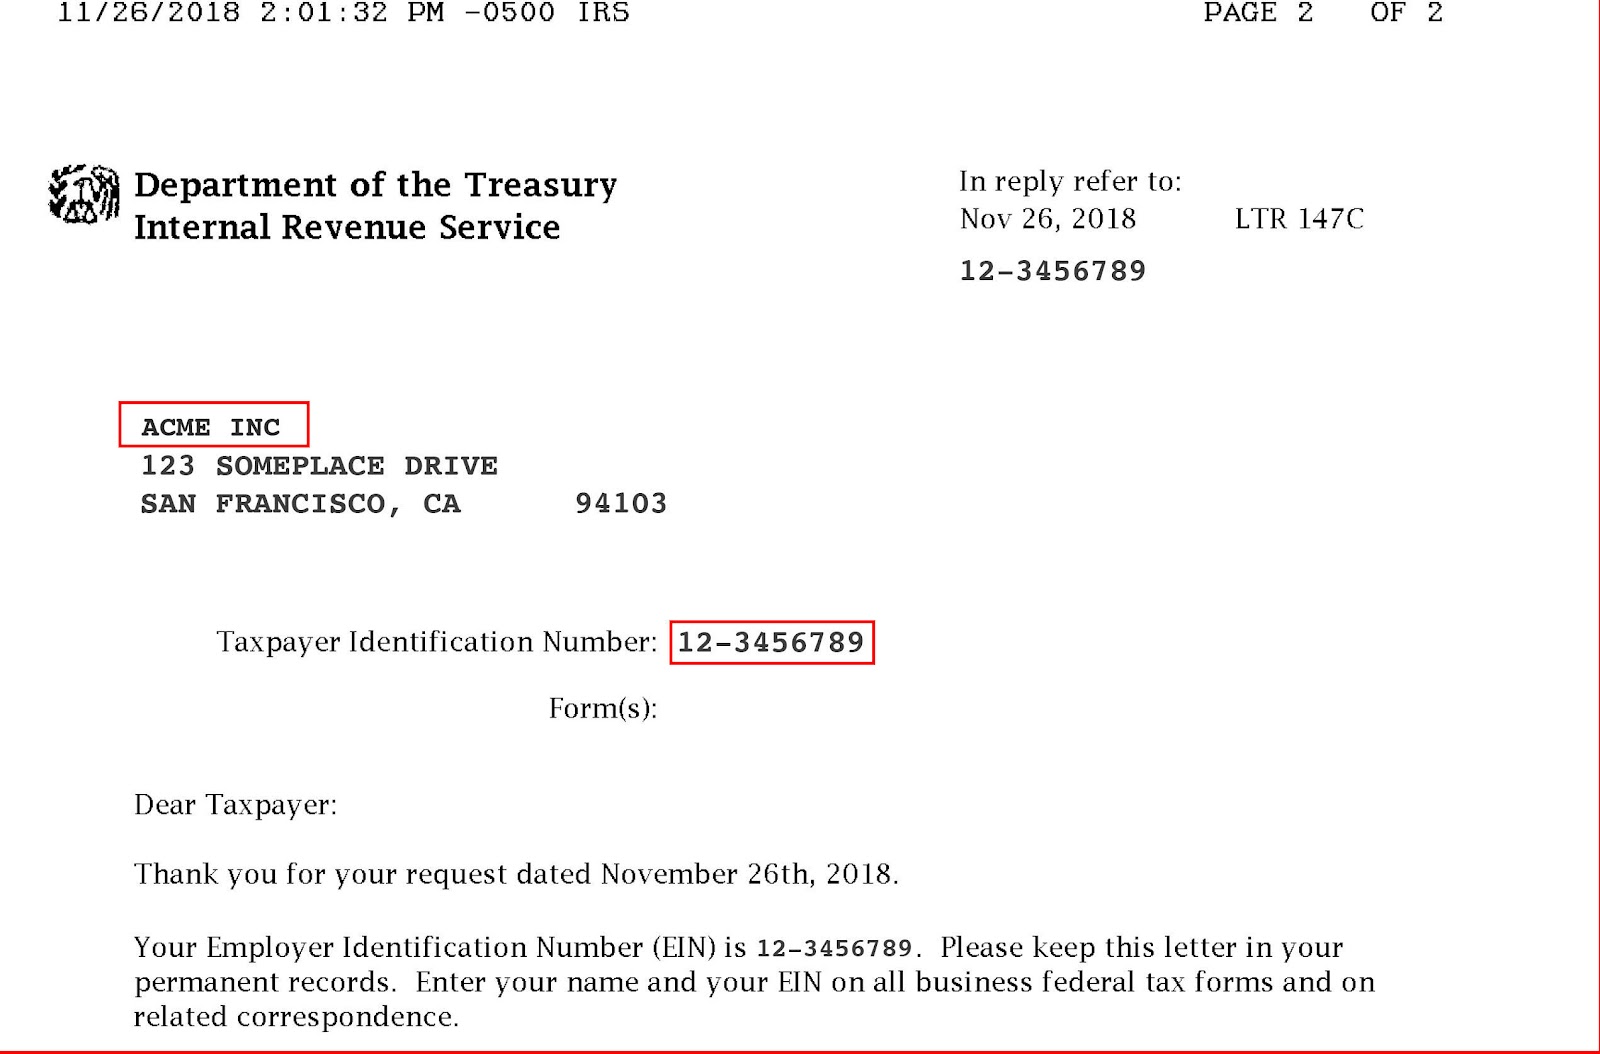 Lettre 147C de l’IRS avec le nom de l’entreprise et le numéro d’identification fiscale mis en évidence